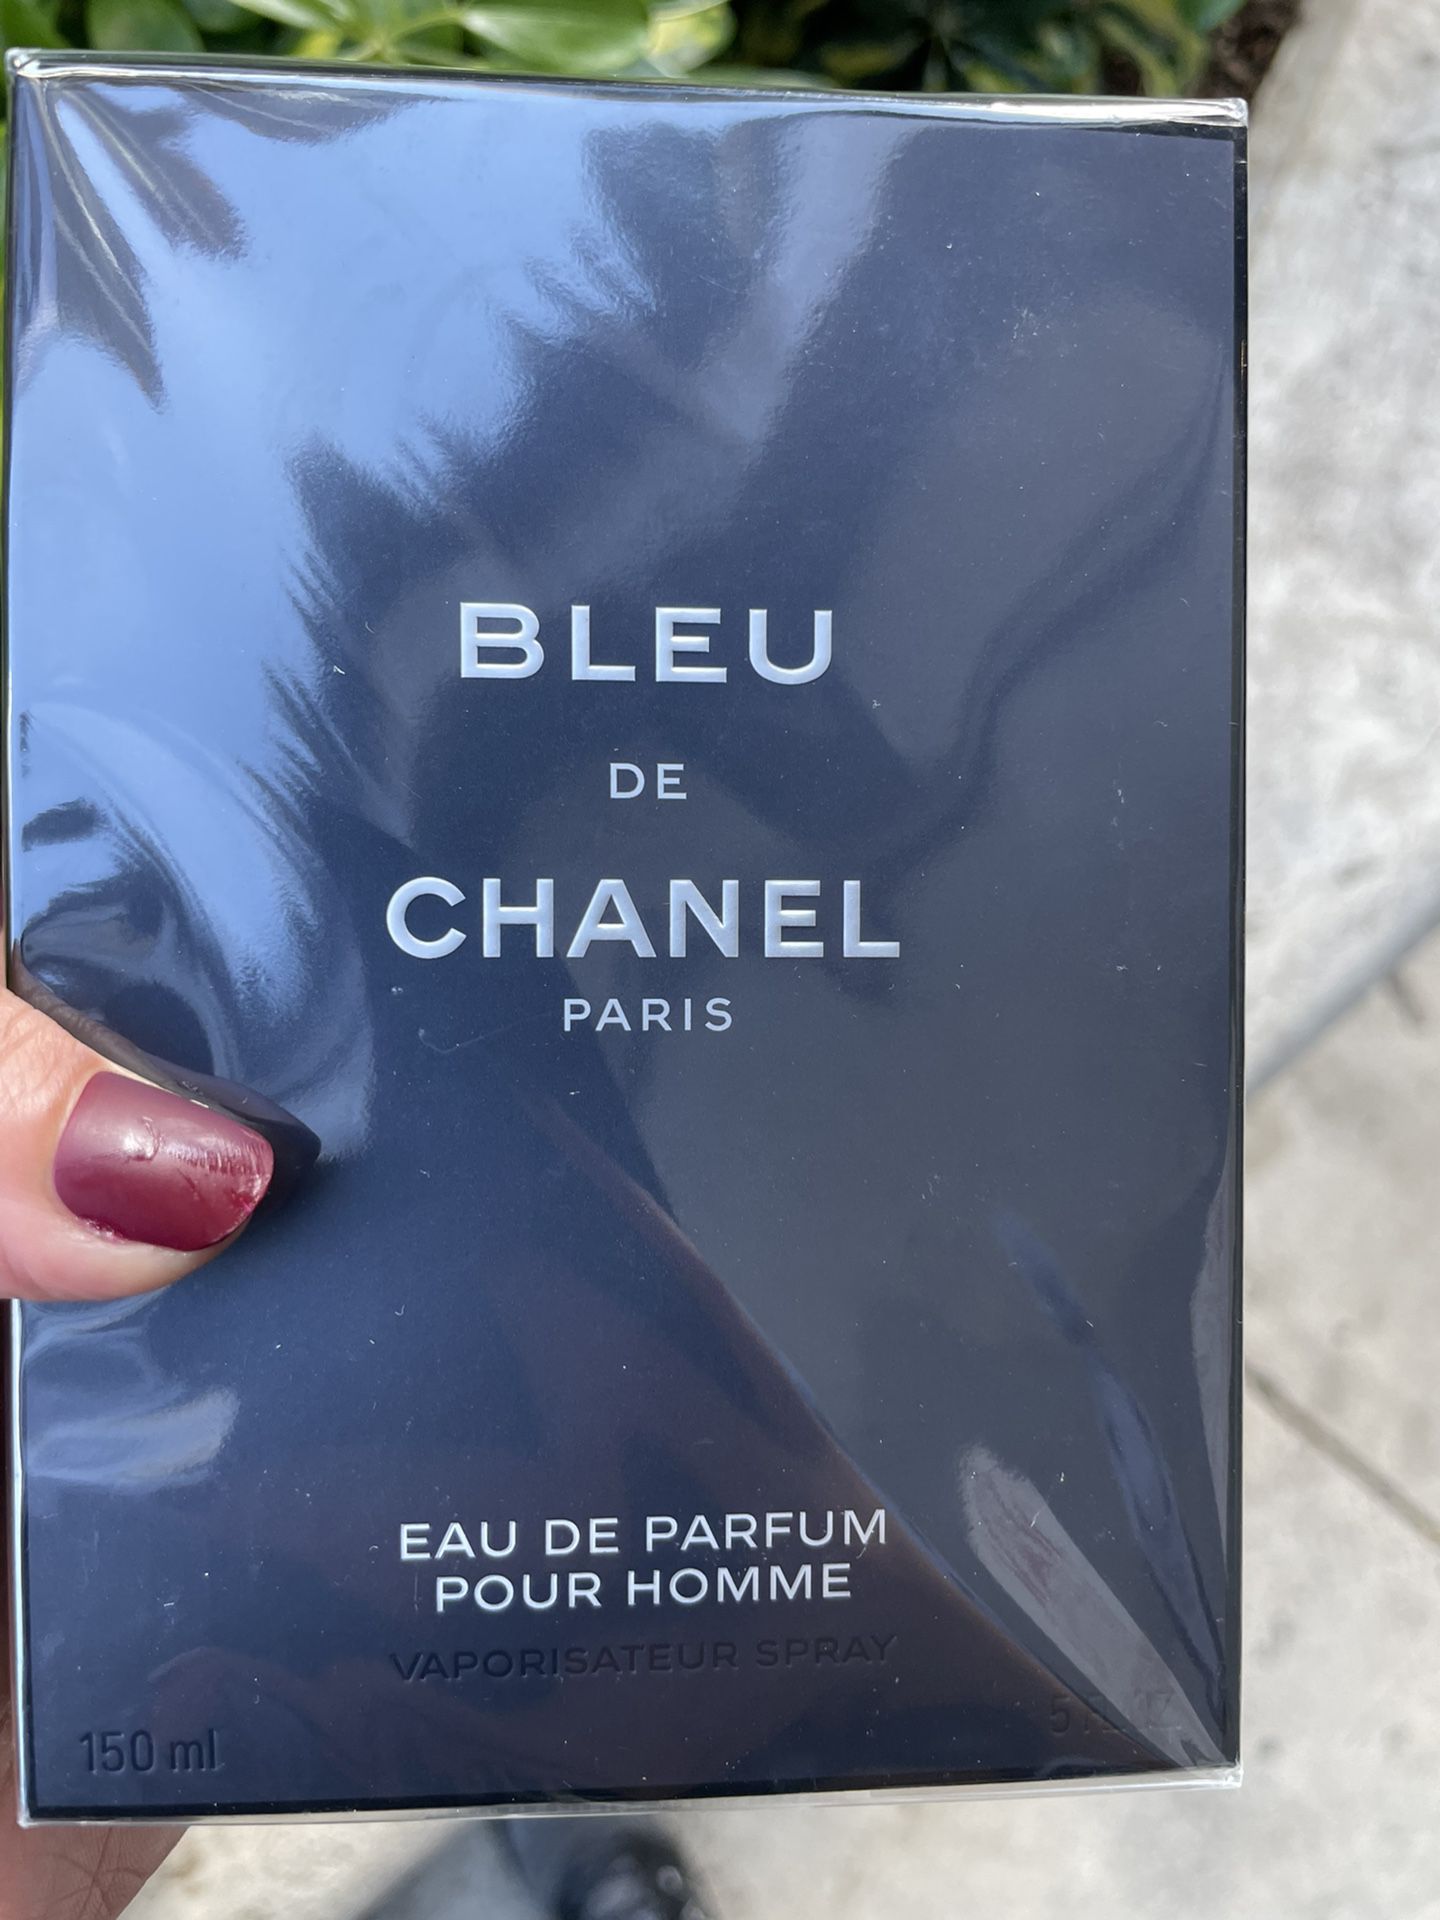 CHANEL Bleu De Chanel Eau De Parfum 3.4oz 100ml for Sale in Miami